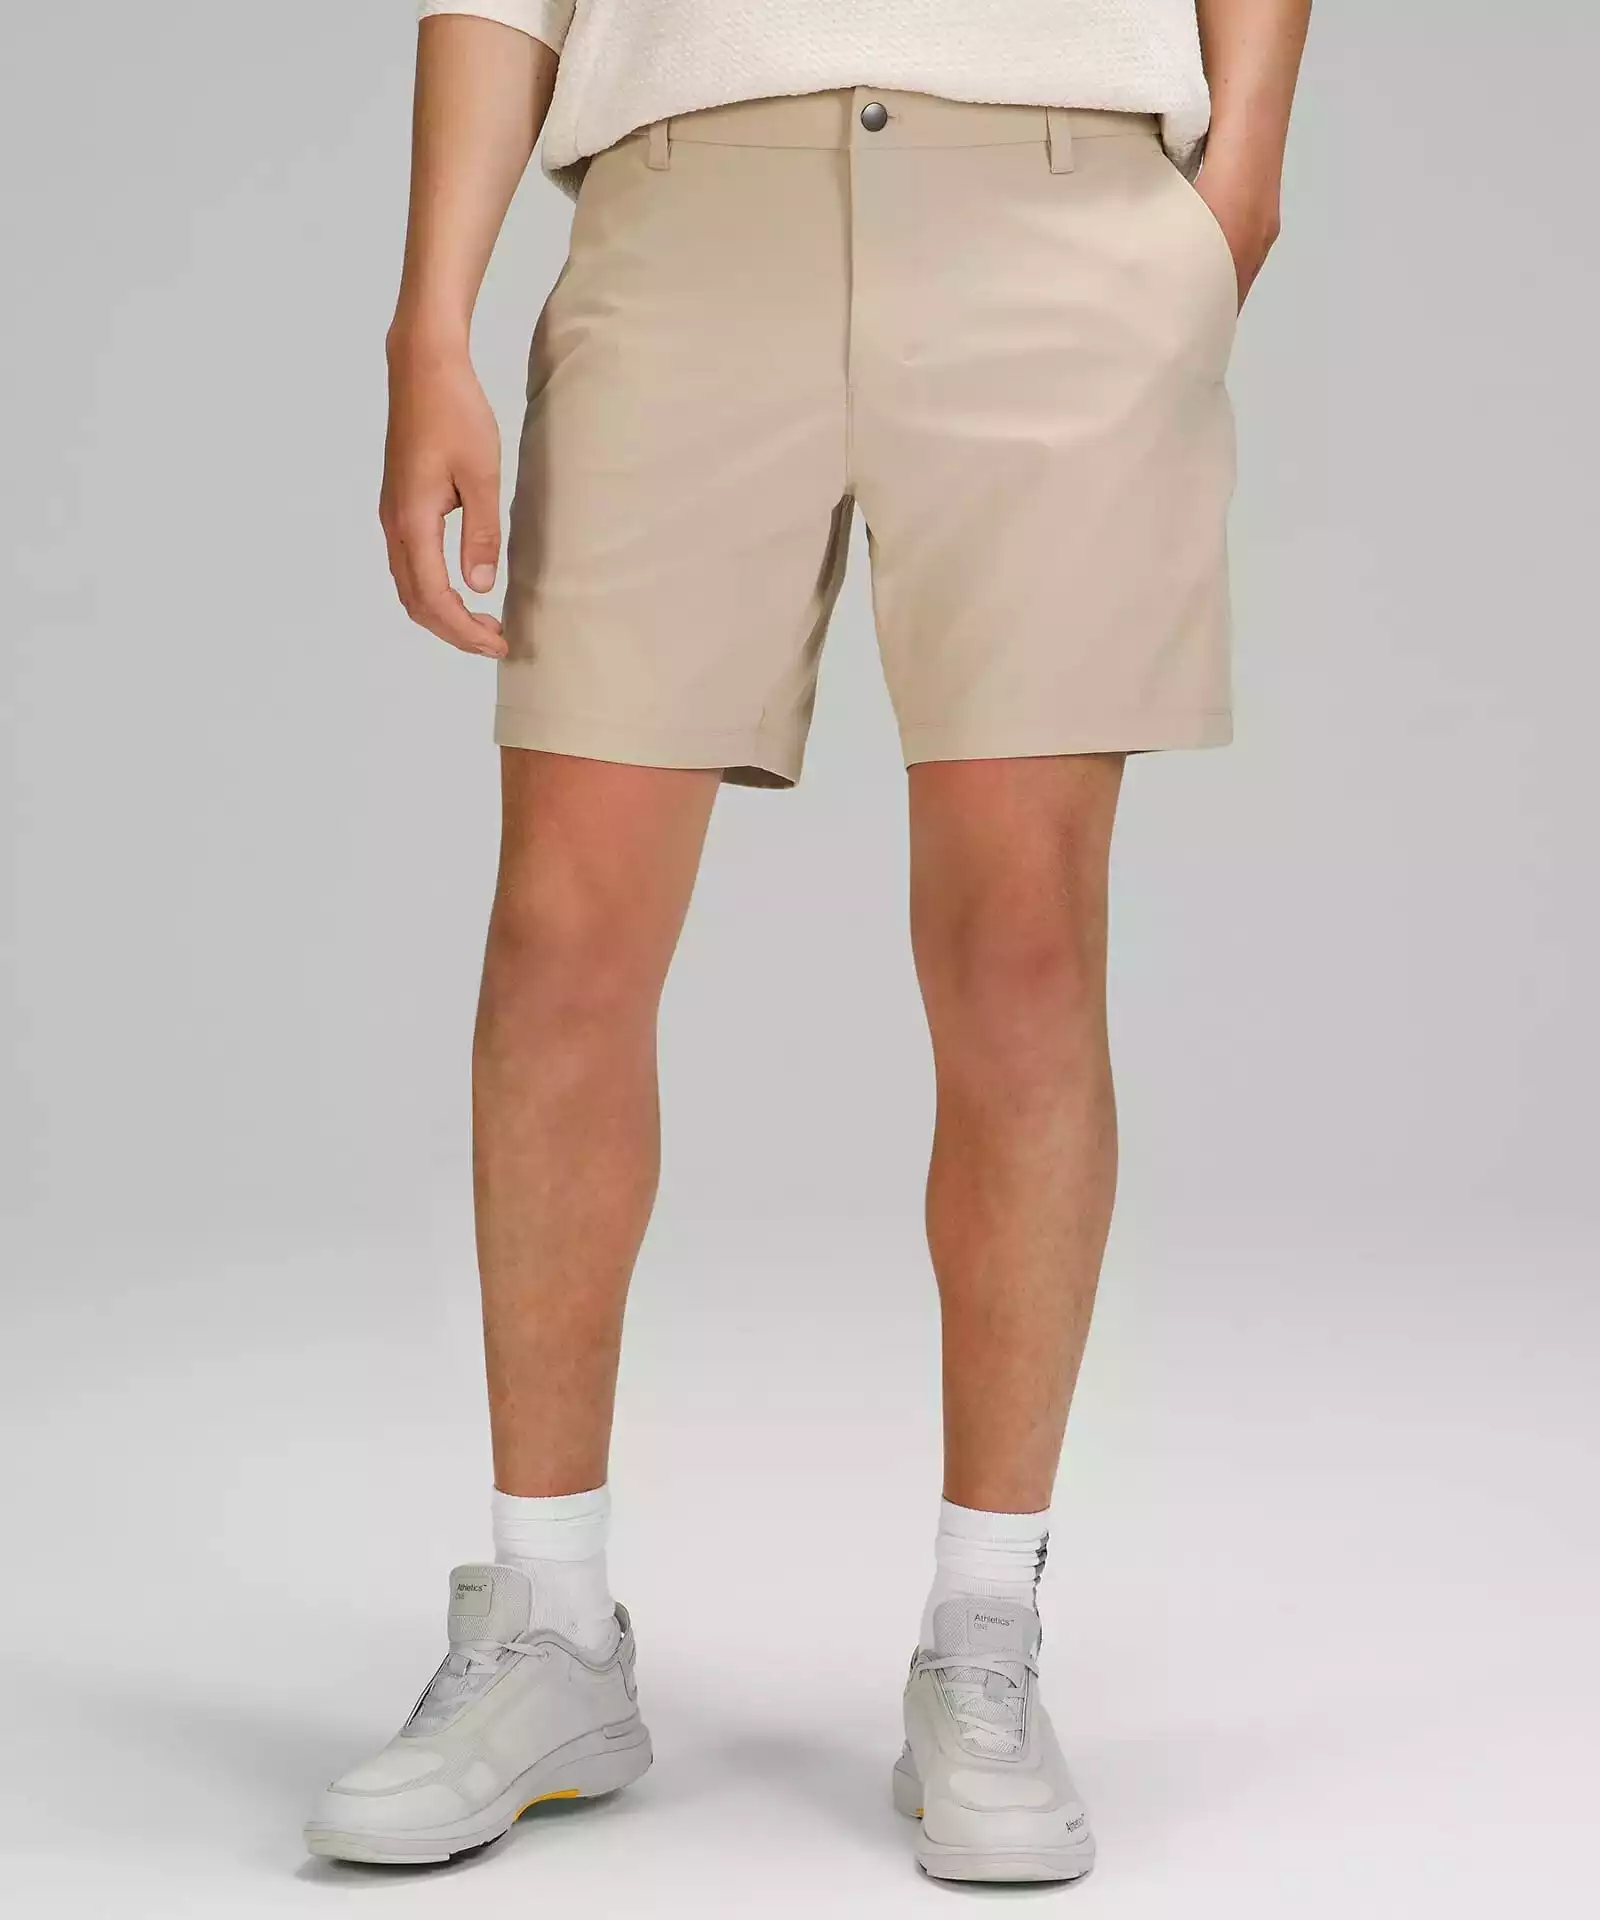 lululemon comission shorts (aka ABC Shorts)